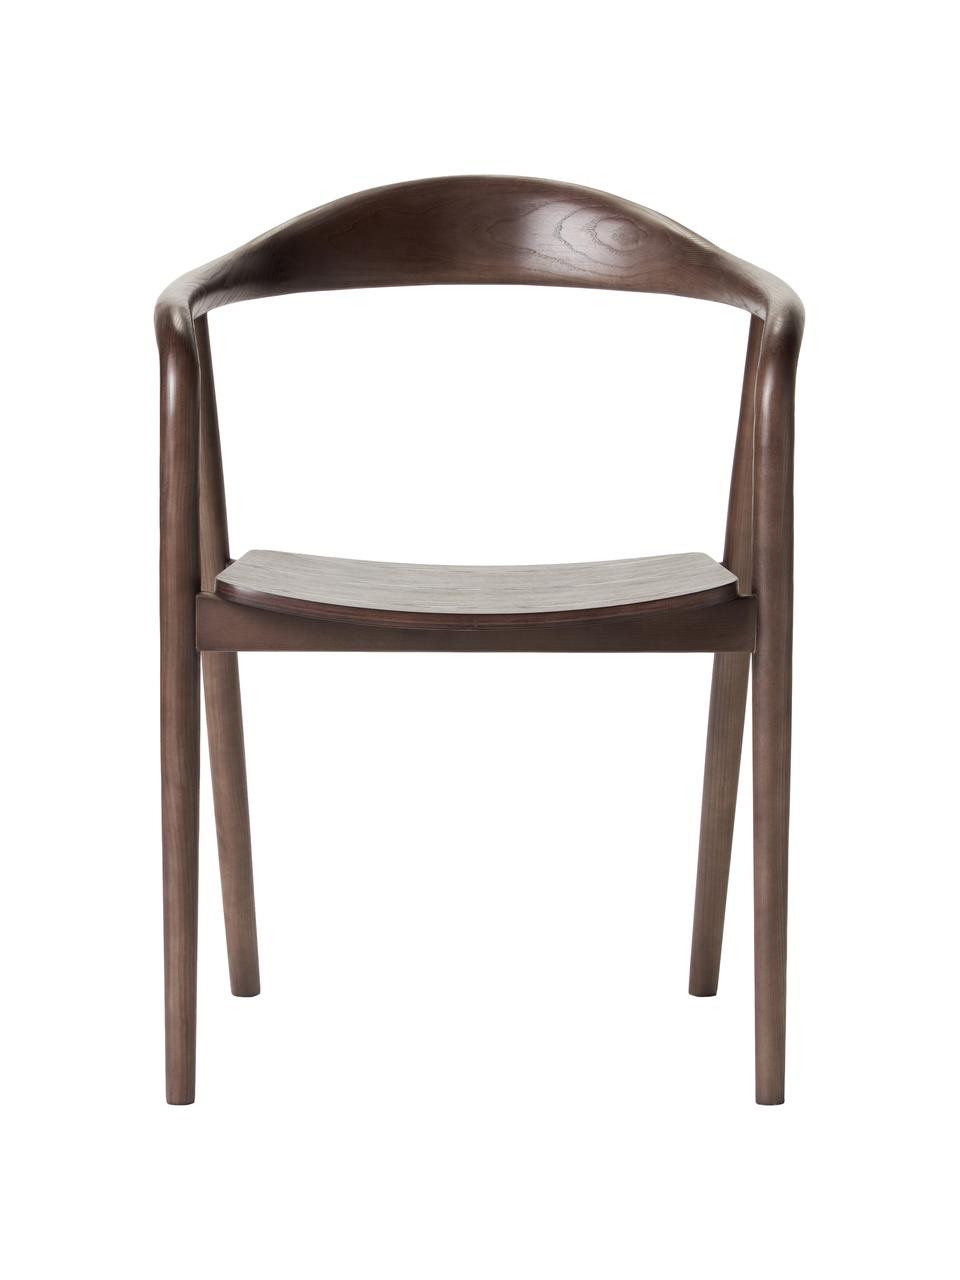 Drevená stolička s opierkami Angelina, Jaseňové drevo lakované, s FSC certifikátom, preglejka lakovaná, s FSC certifikátom, Tmavé jaseňové drevo, Š 57 x V 80 cm